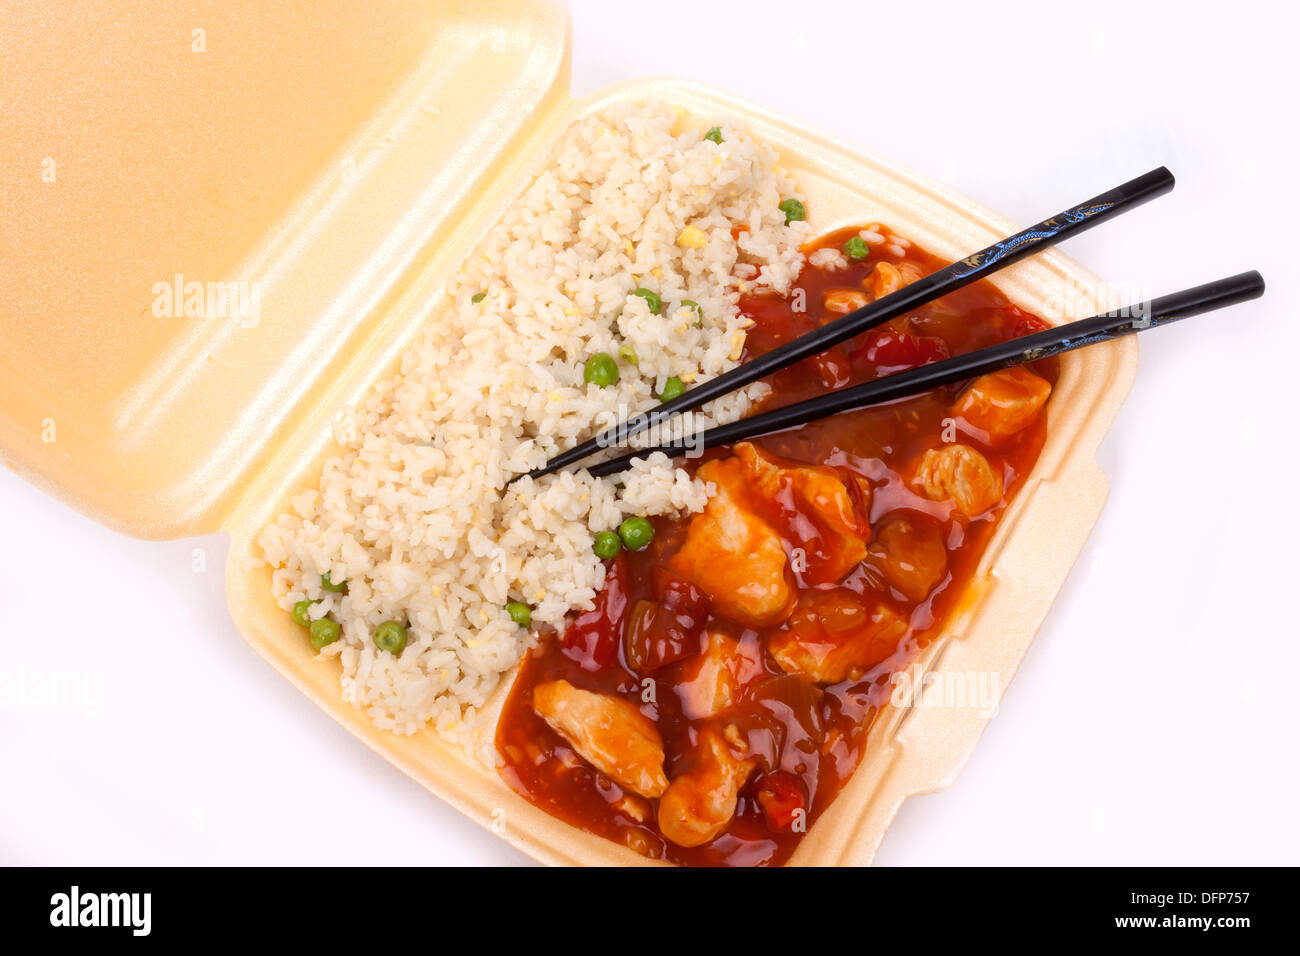 Primo piano del take away cinese dolce e aspro di pollo con riso. Foto Stock